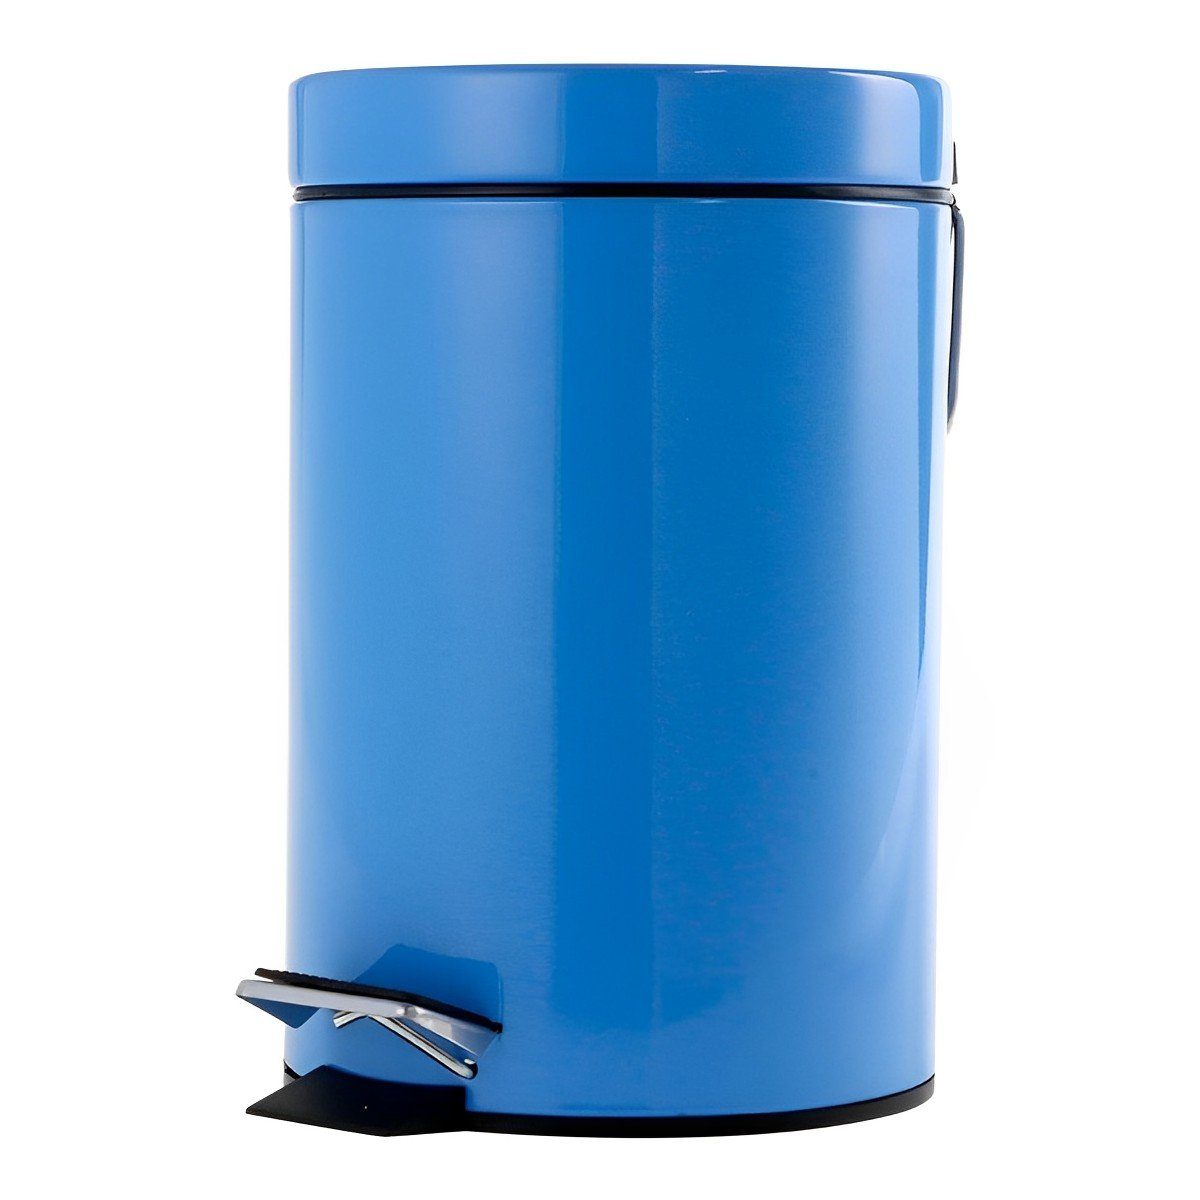 Büro Schäfer Design Tretabfalleimer Mülleimer Blau Liter 3